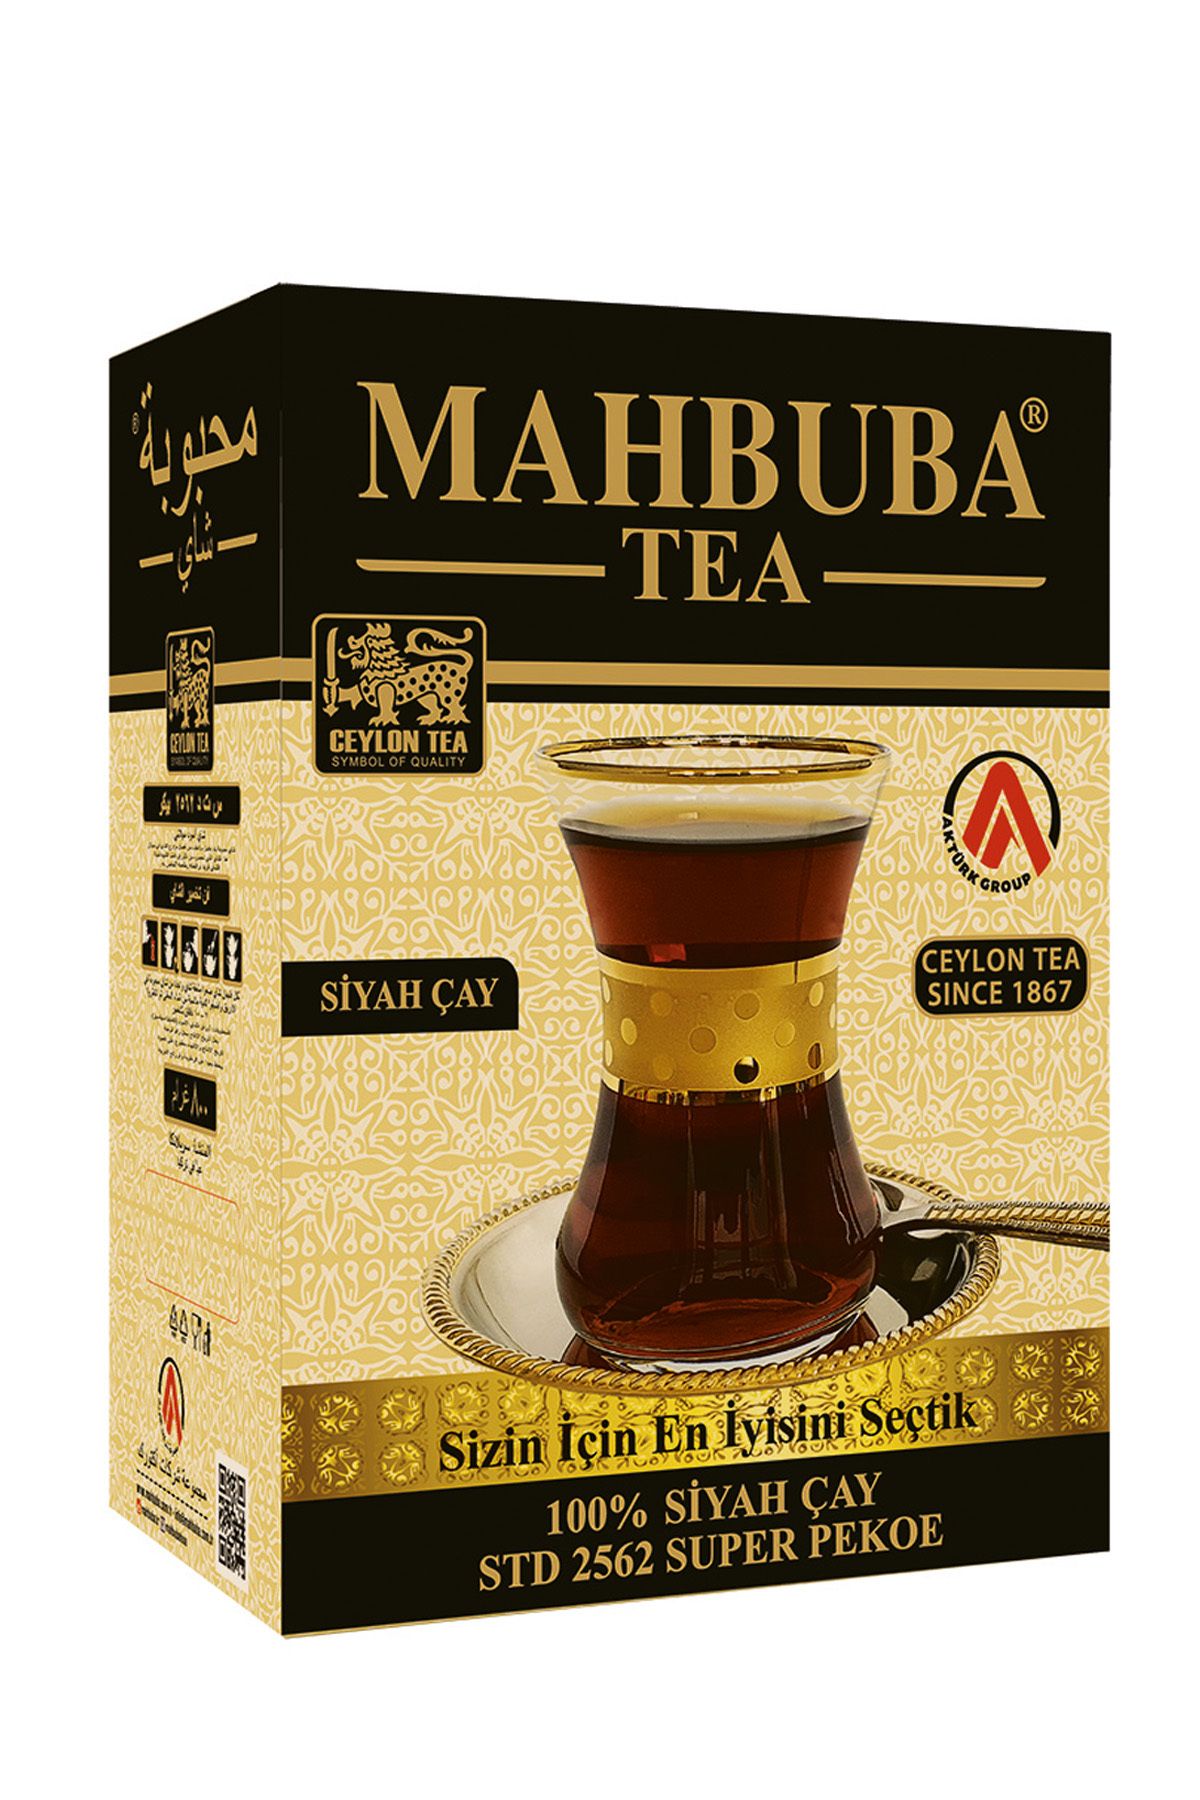 Mahbuba Tea Std 2562 Super Pekoe Ithal Seylan Sri Lanka Ceylon Kaçak Siyah Yaprak Çayı 400gr